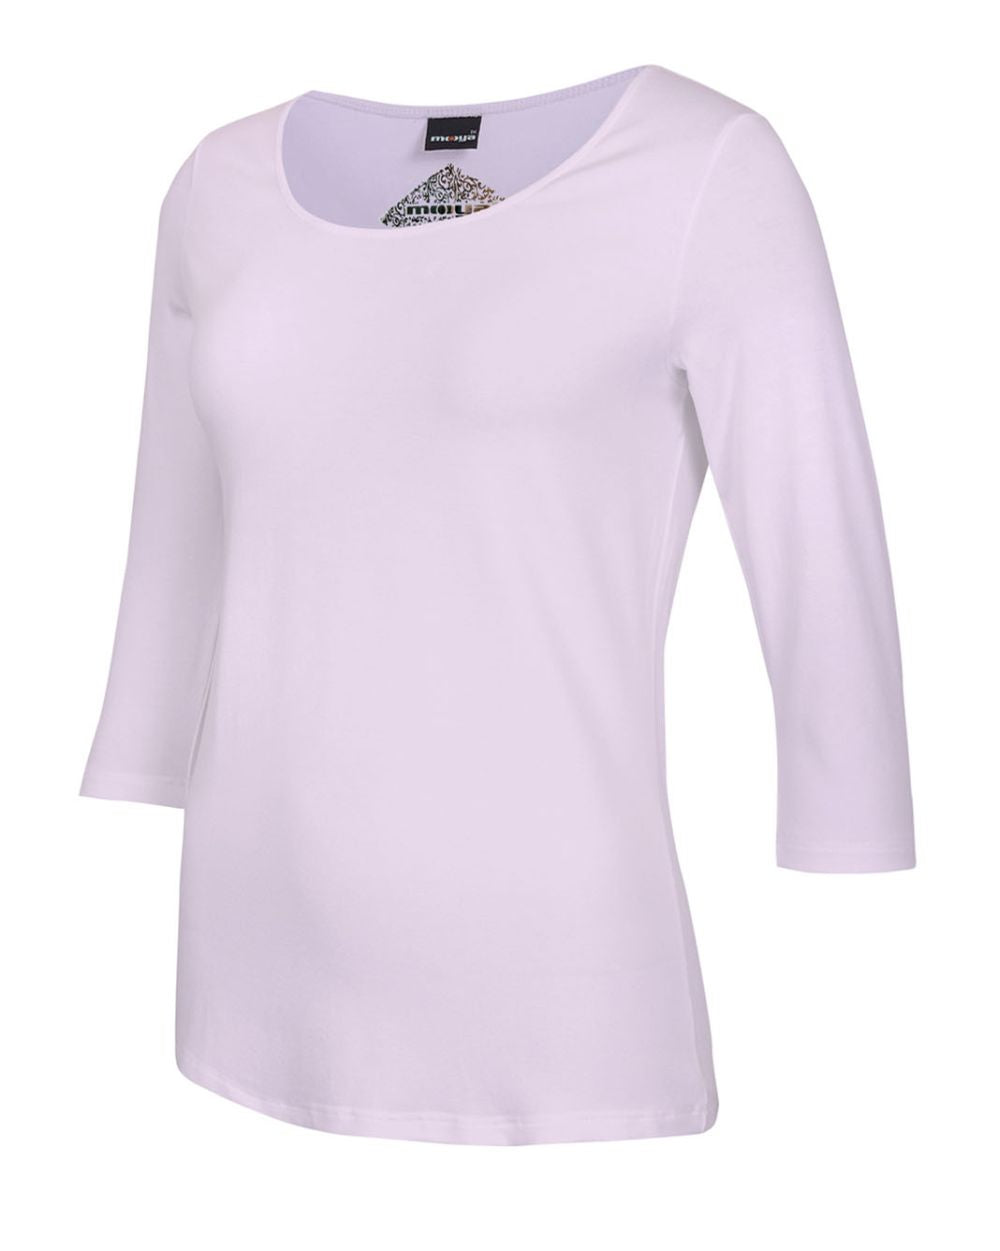 Damen-Shirt Angela, 3/4-Arm, Rundhalsausschnitt, Farbe Rose